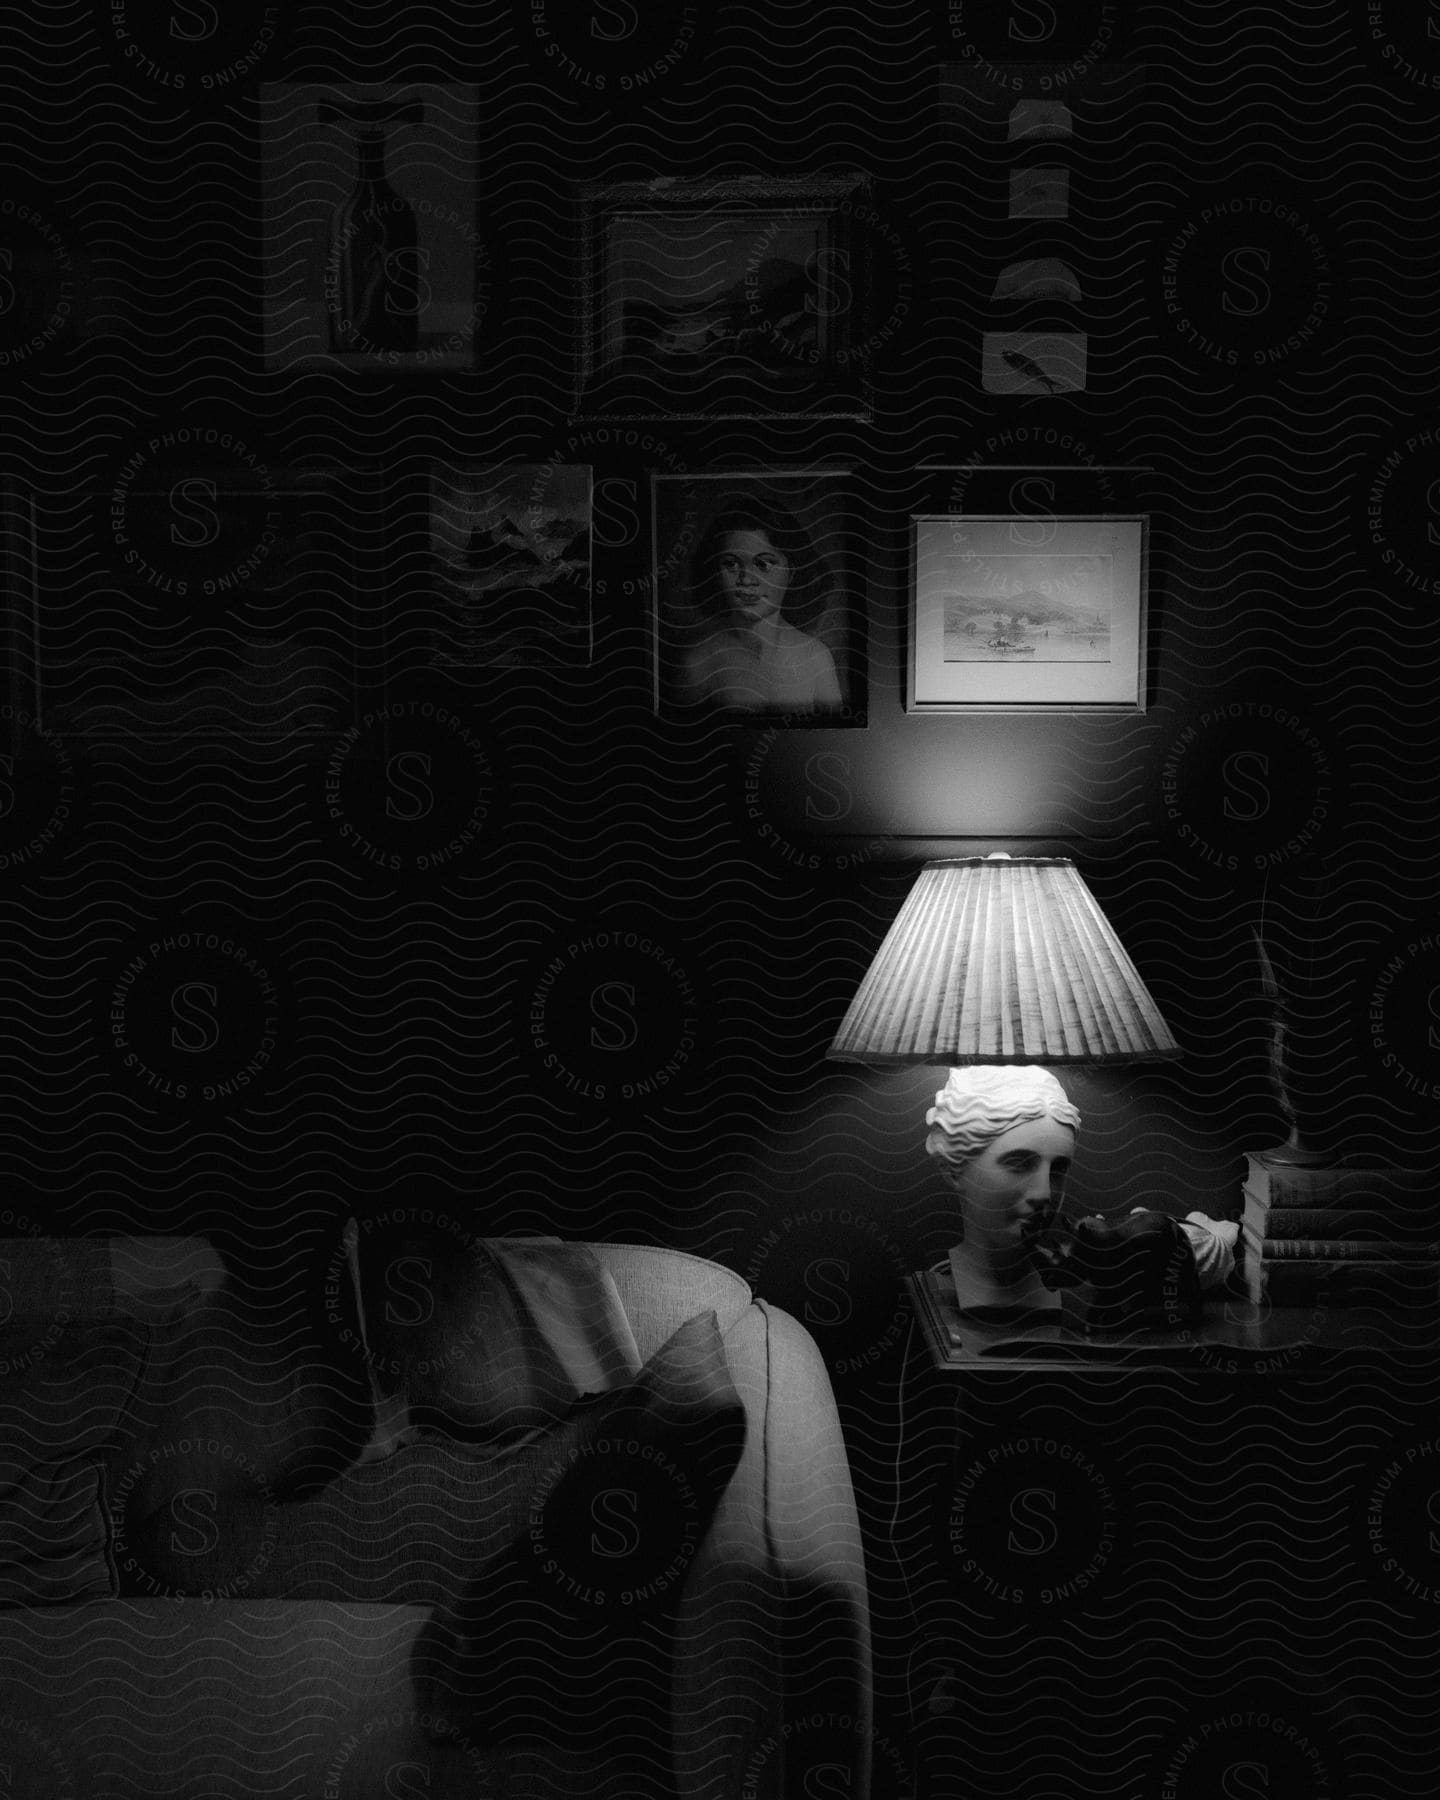 A dark room with vintage decor